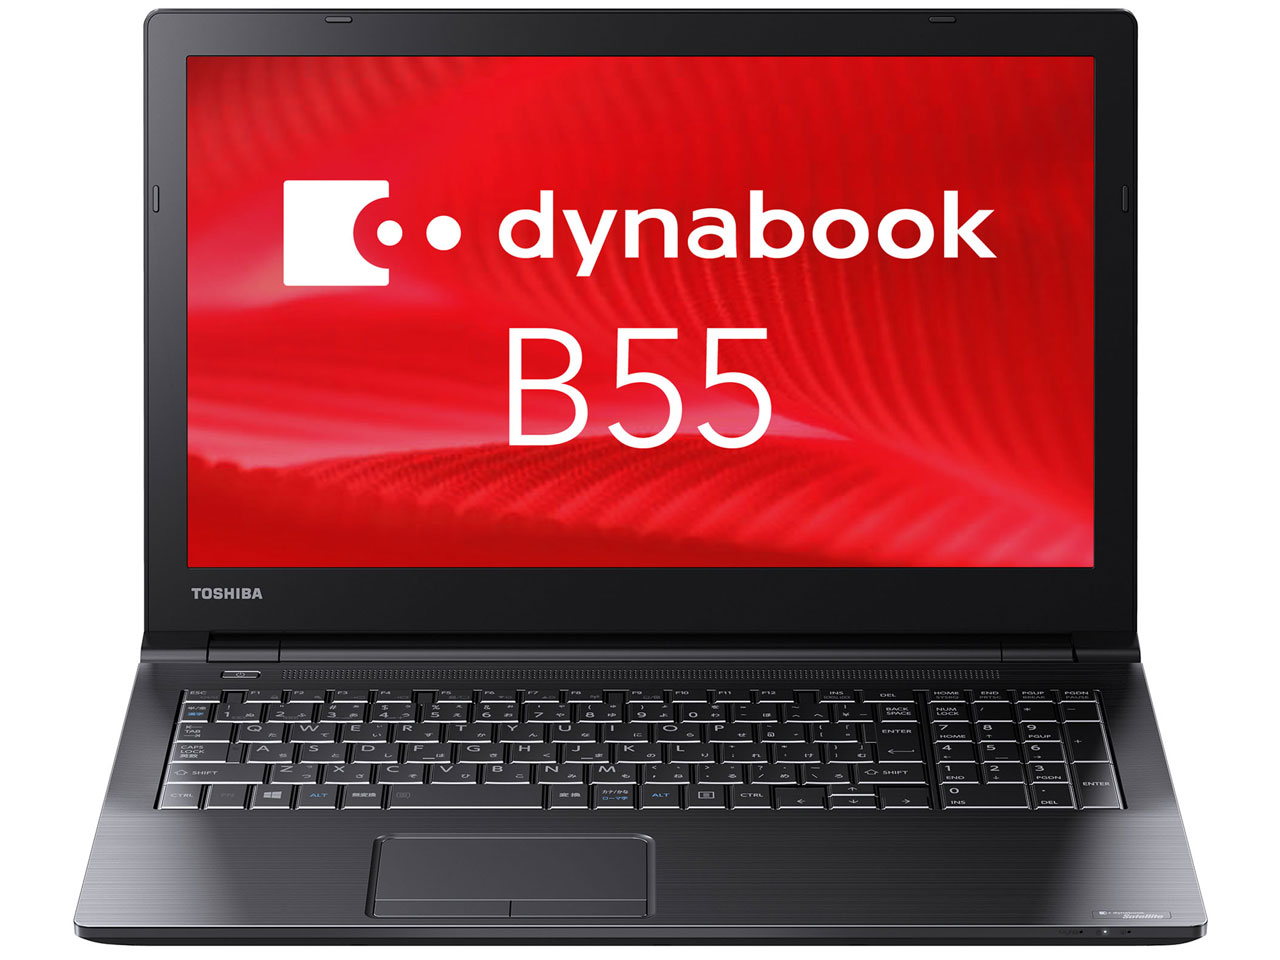 価格.com - dynabook B55 B55/B PB55BEAD4RDPD81 の製品画像